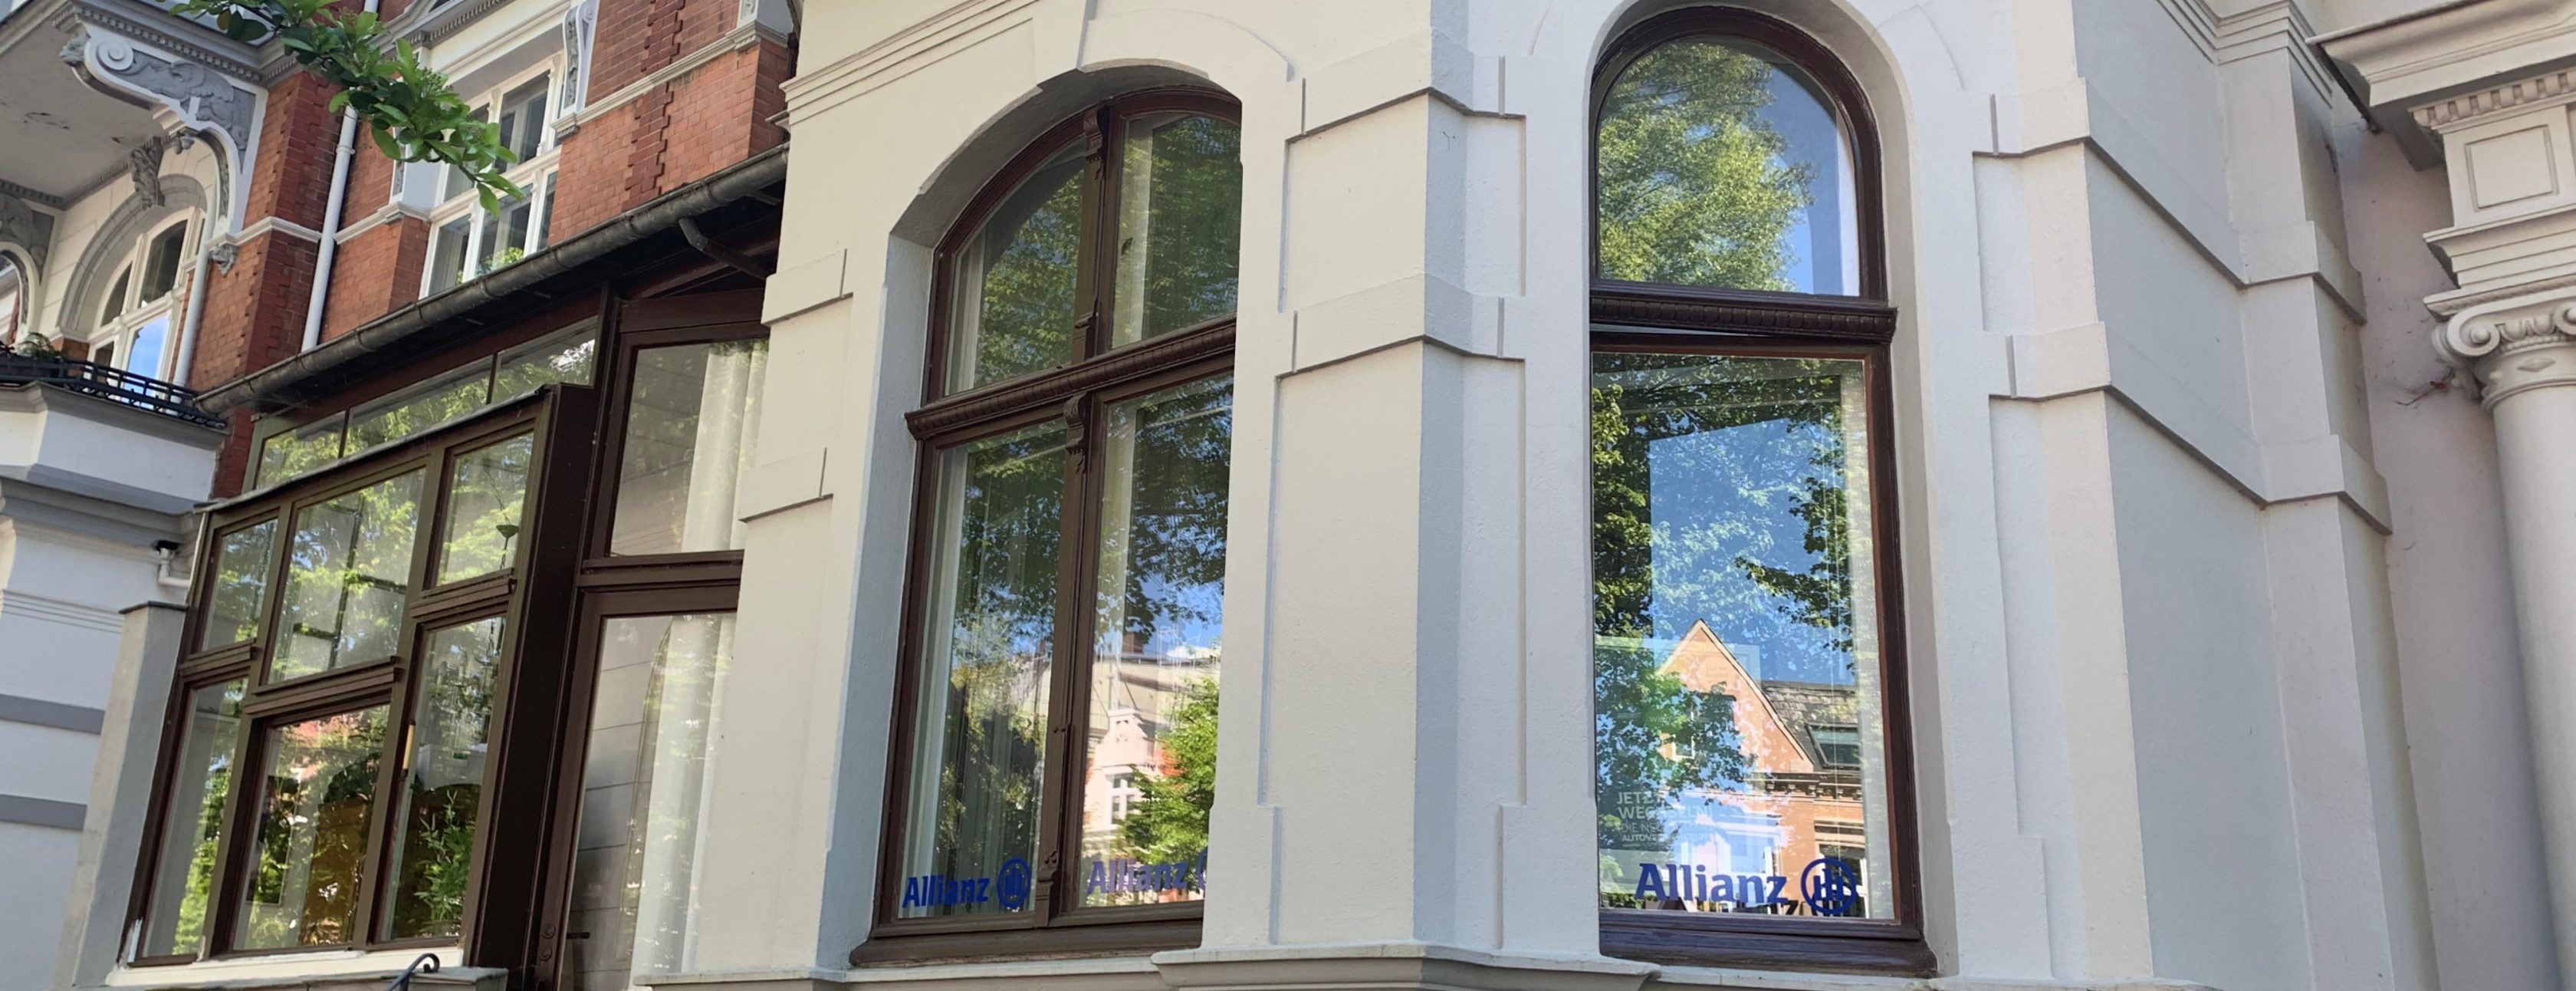 Allianz Versicherung Ralf Claßen Lübeck - Agentur Gebäude